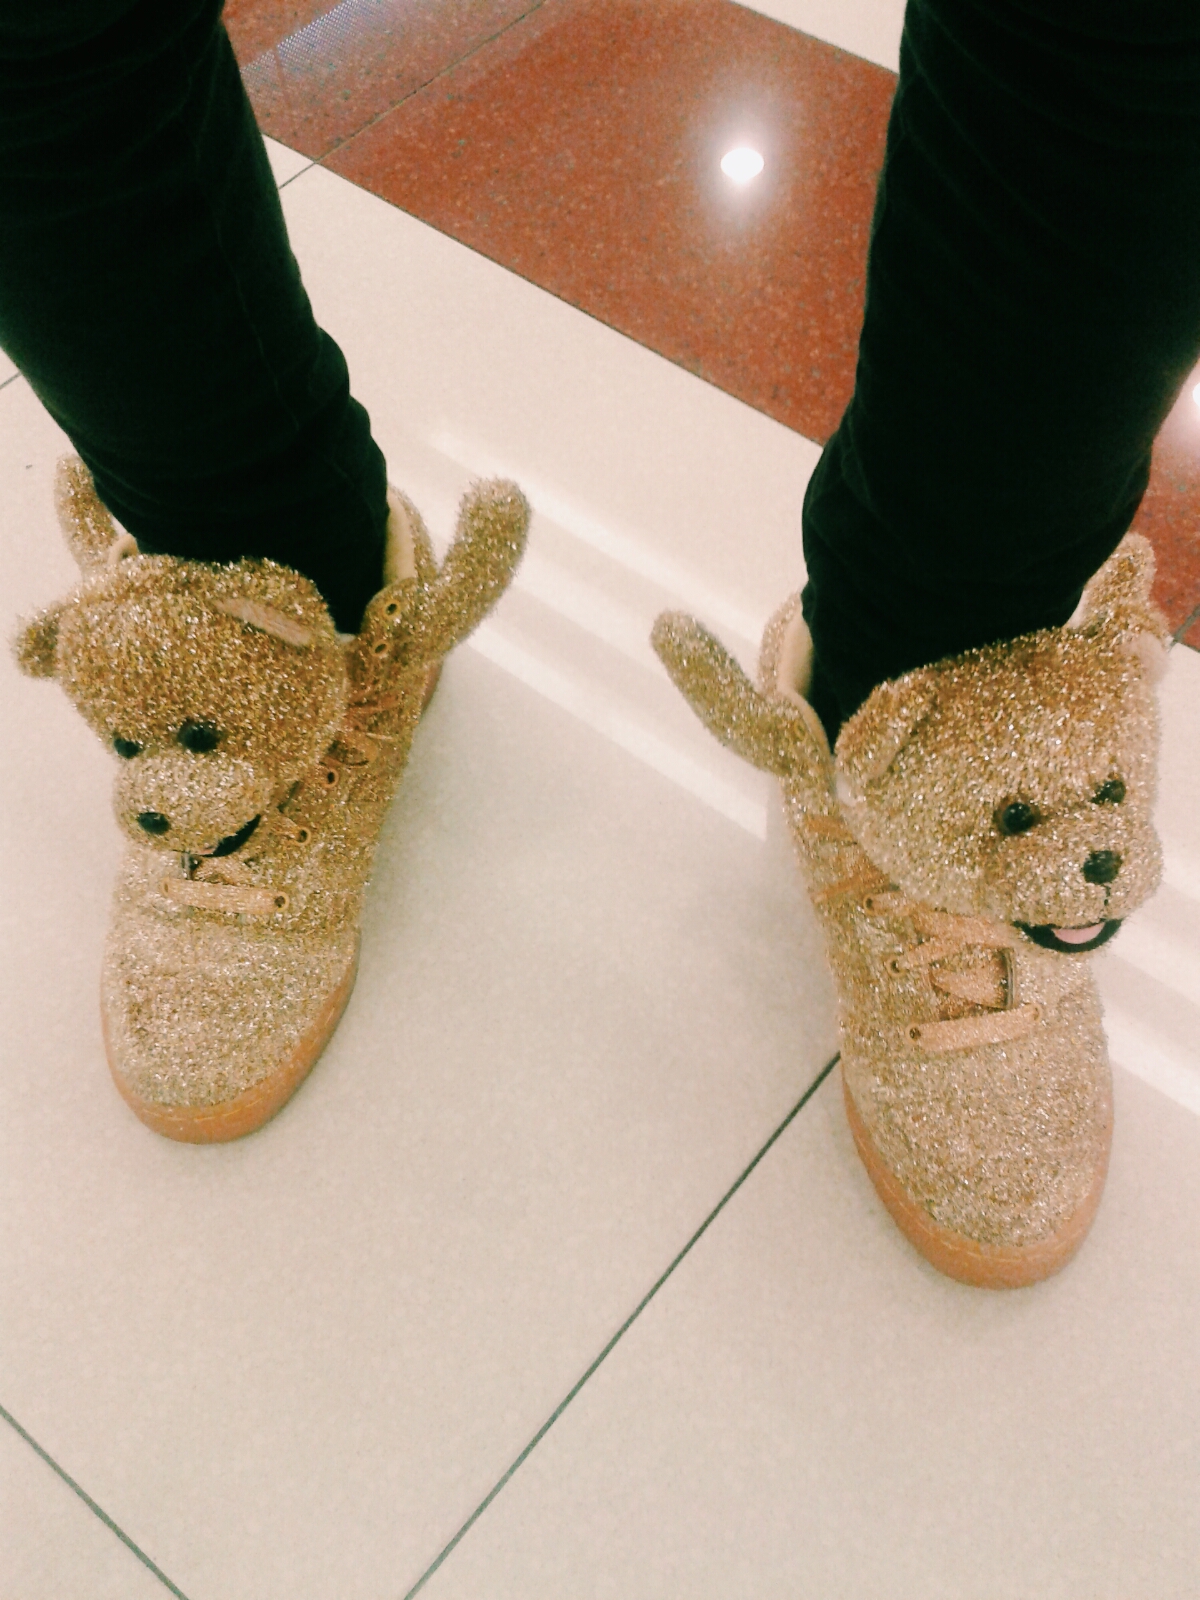 adidas teddy bear